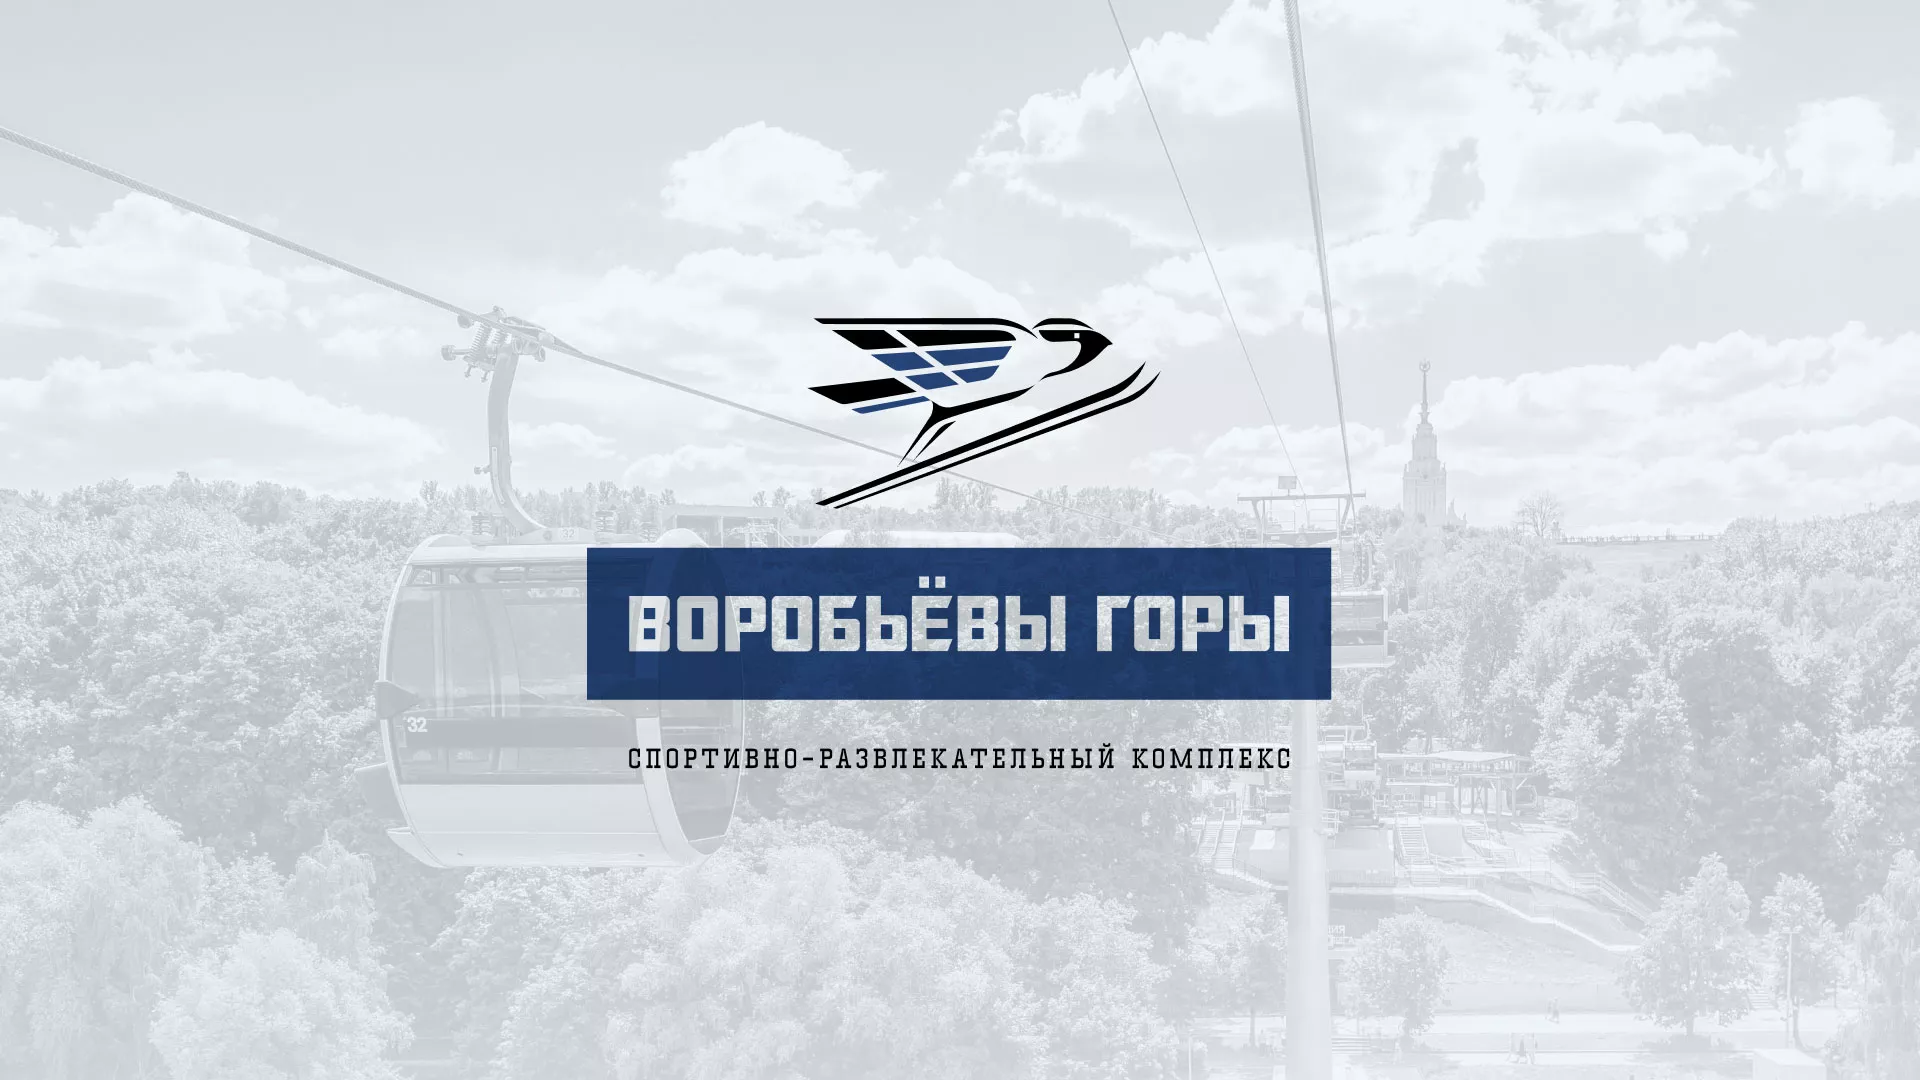 Разработка сайта в Лениногорске для спортивно-развлекательного комплекса «Воробьёвы горы»